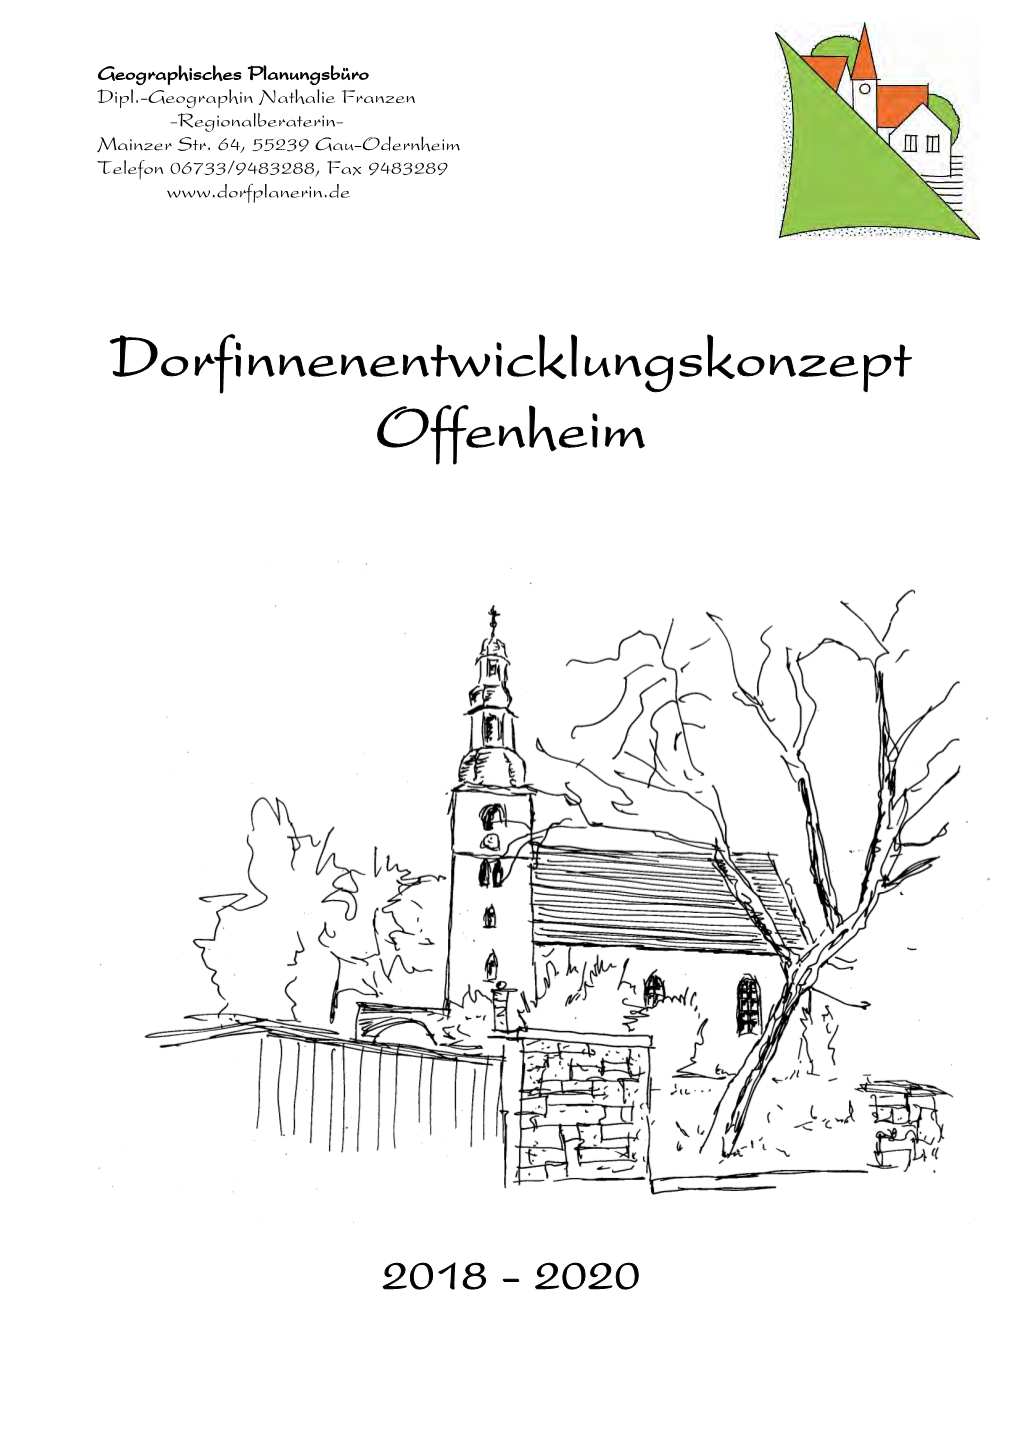 Dorfinnenentwicklungskonzept Offenheim 2